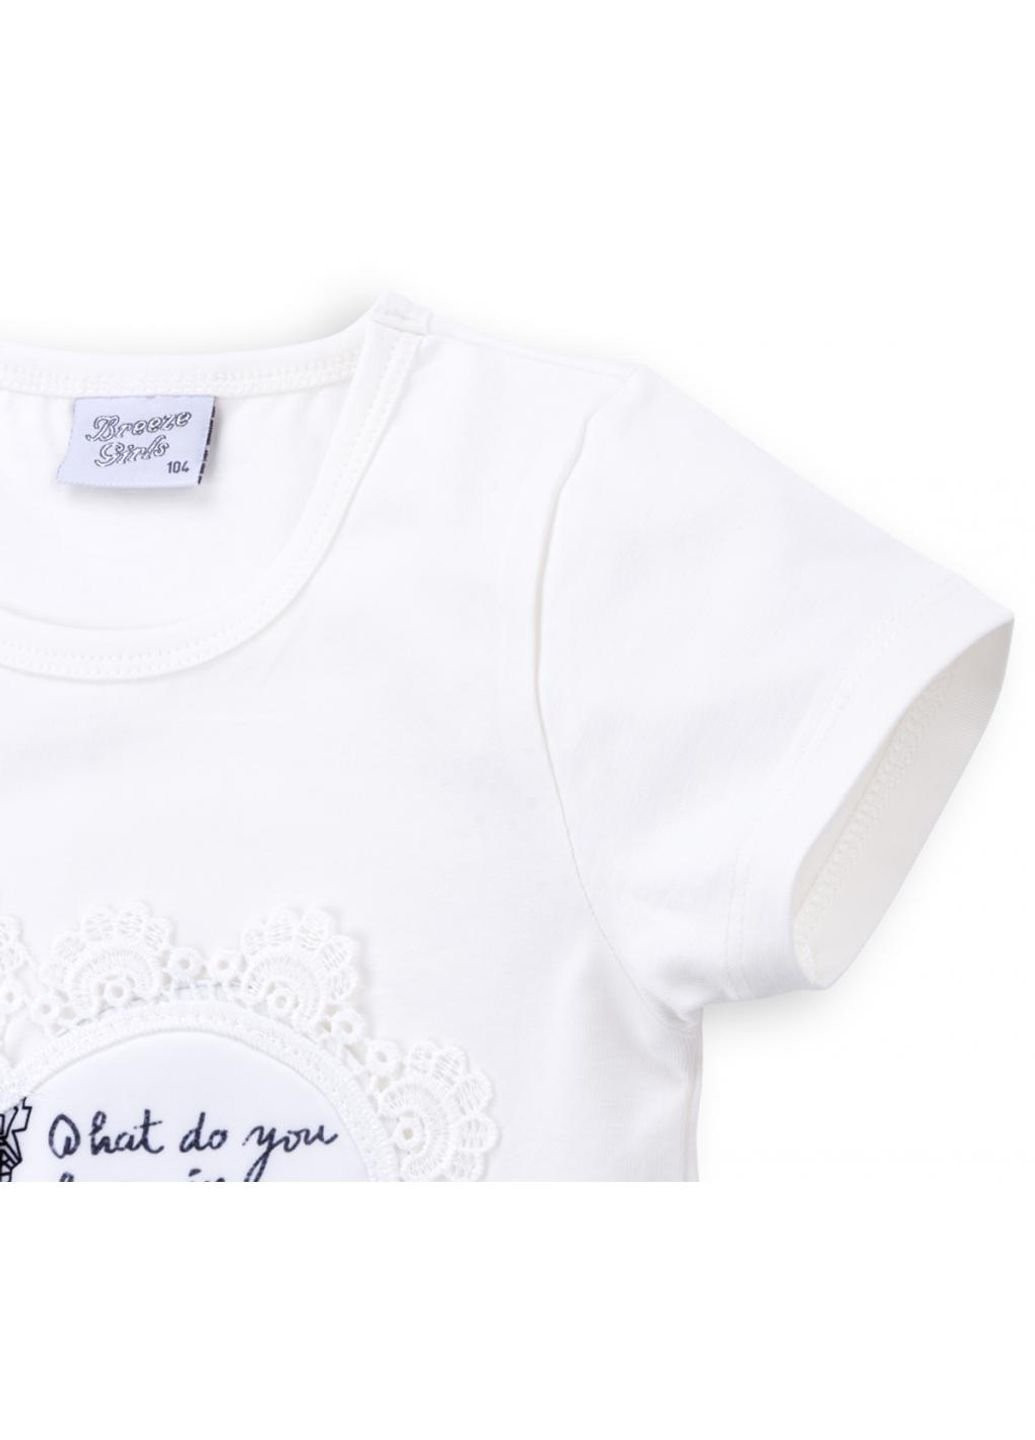 Біла демісезонна футболка дитяча з вежею (8326-128g-white) Breeze